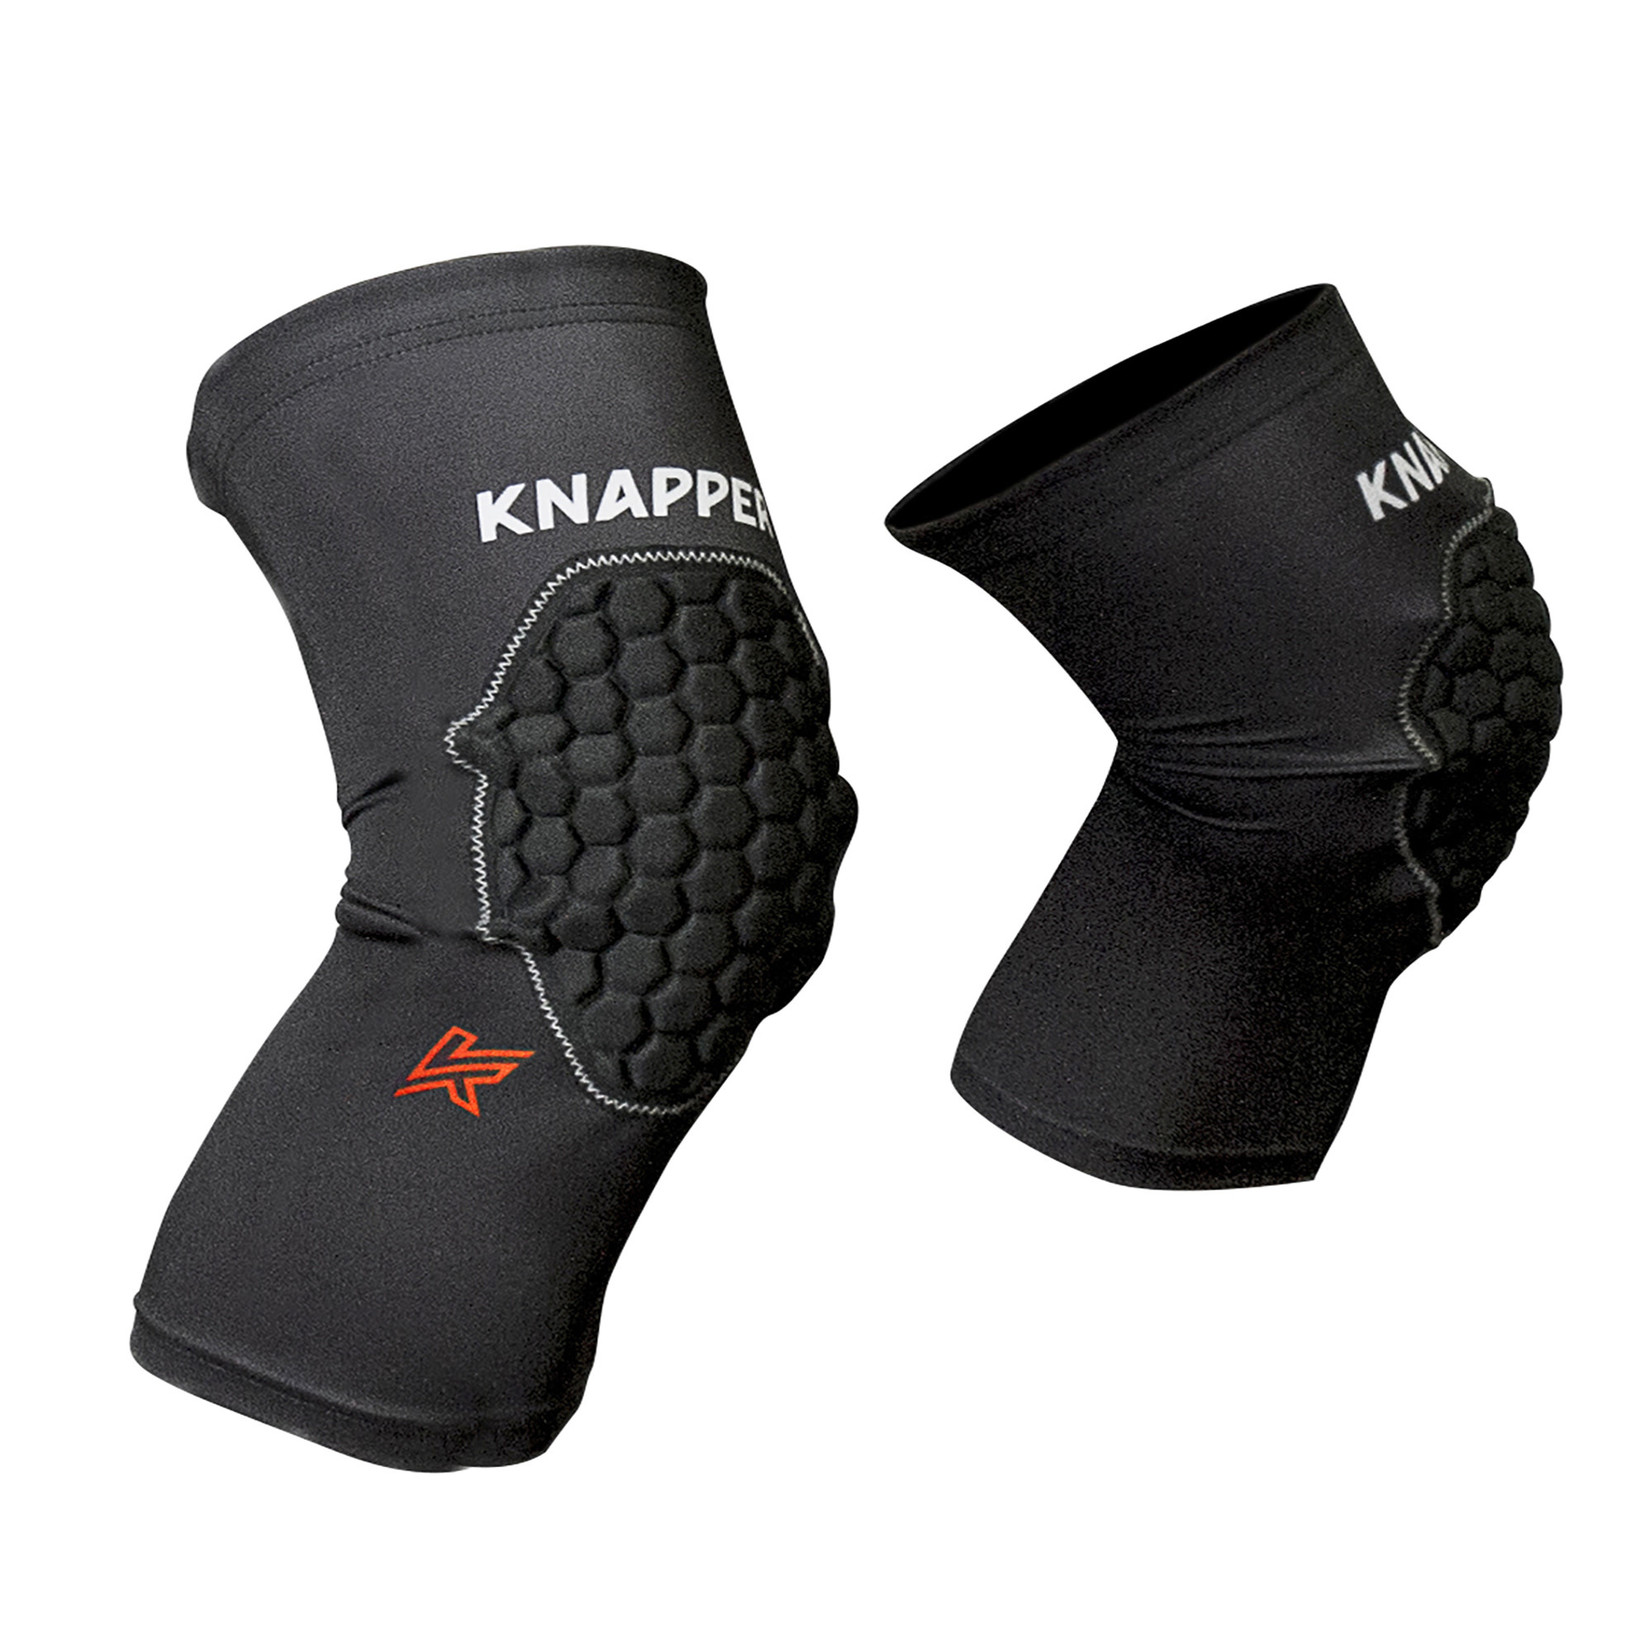 Knapper Protection Sleeves Knapper